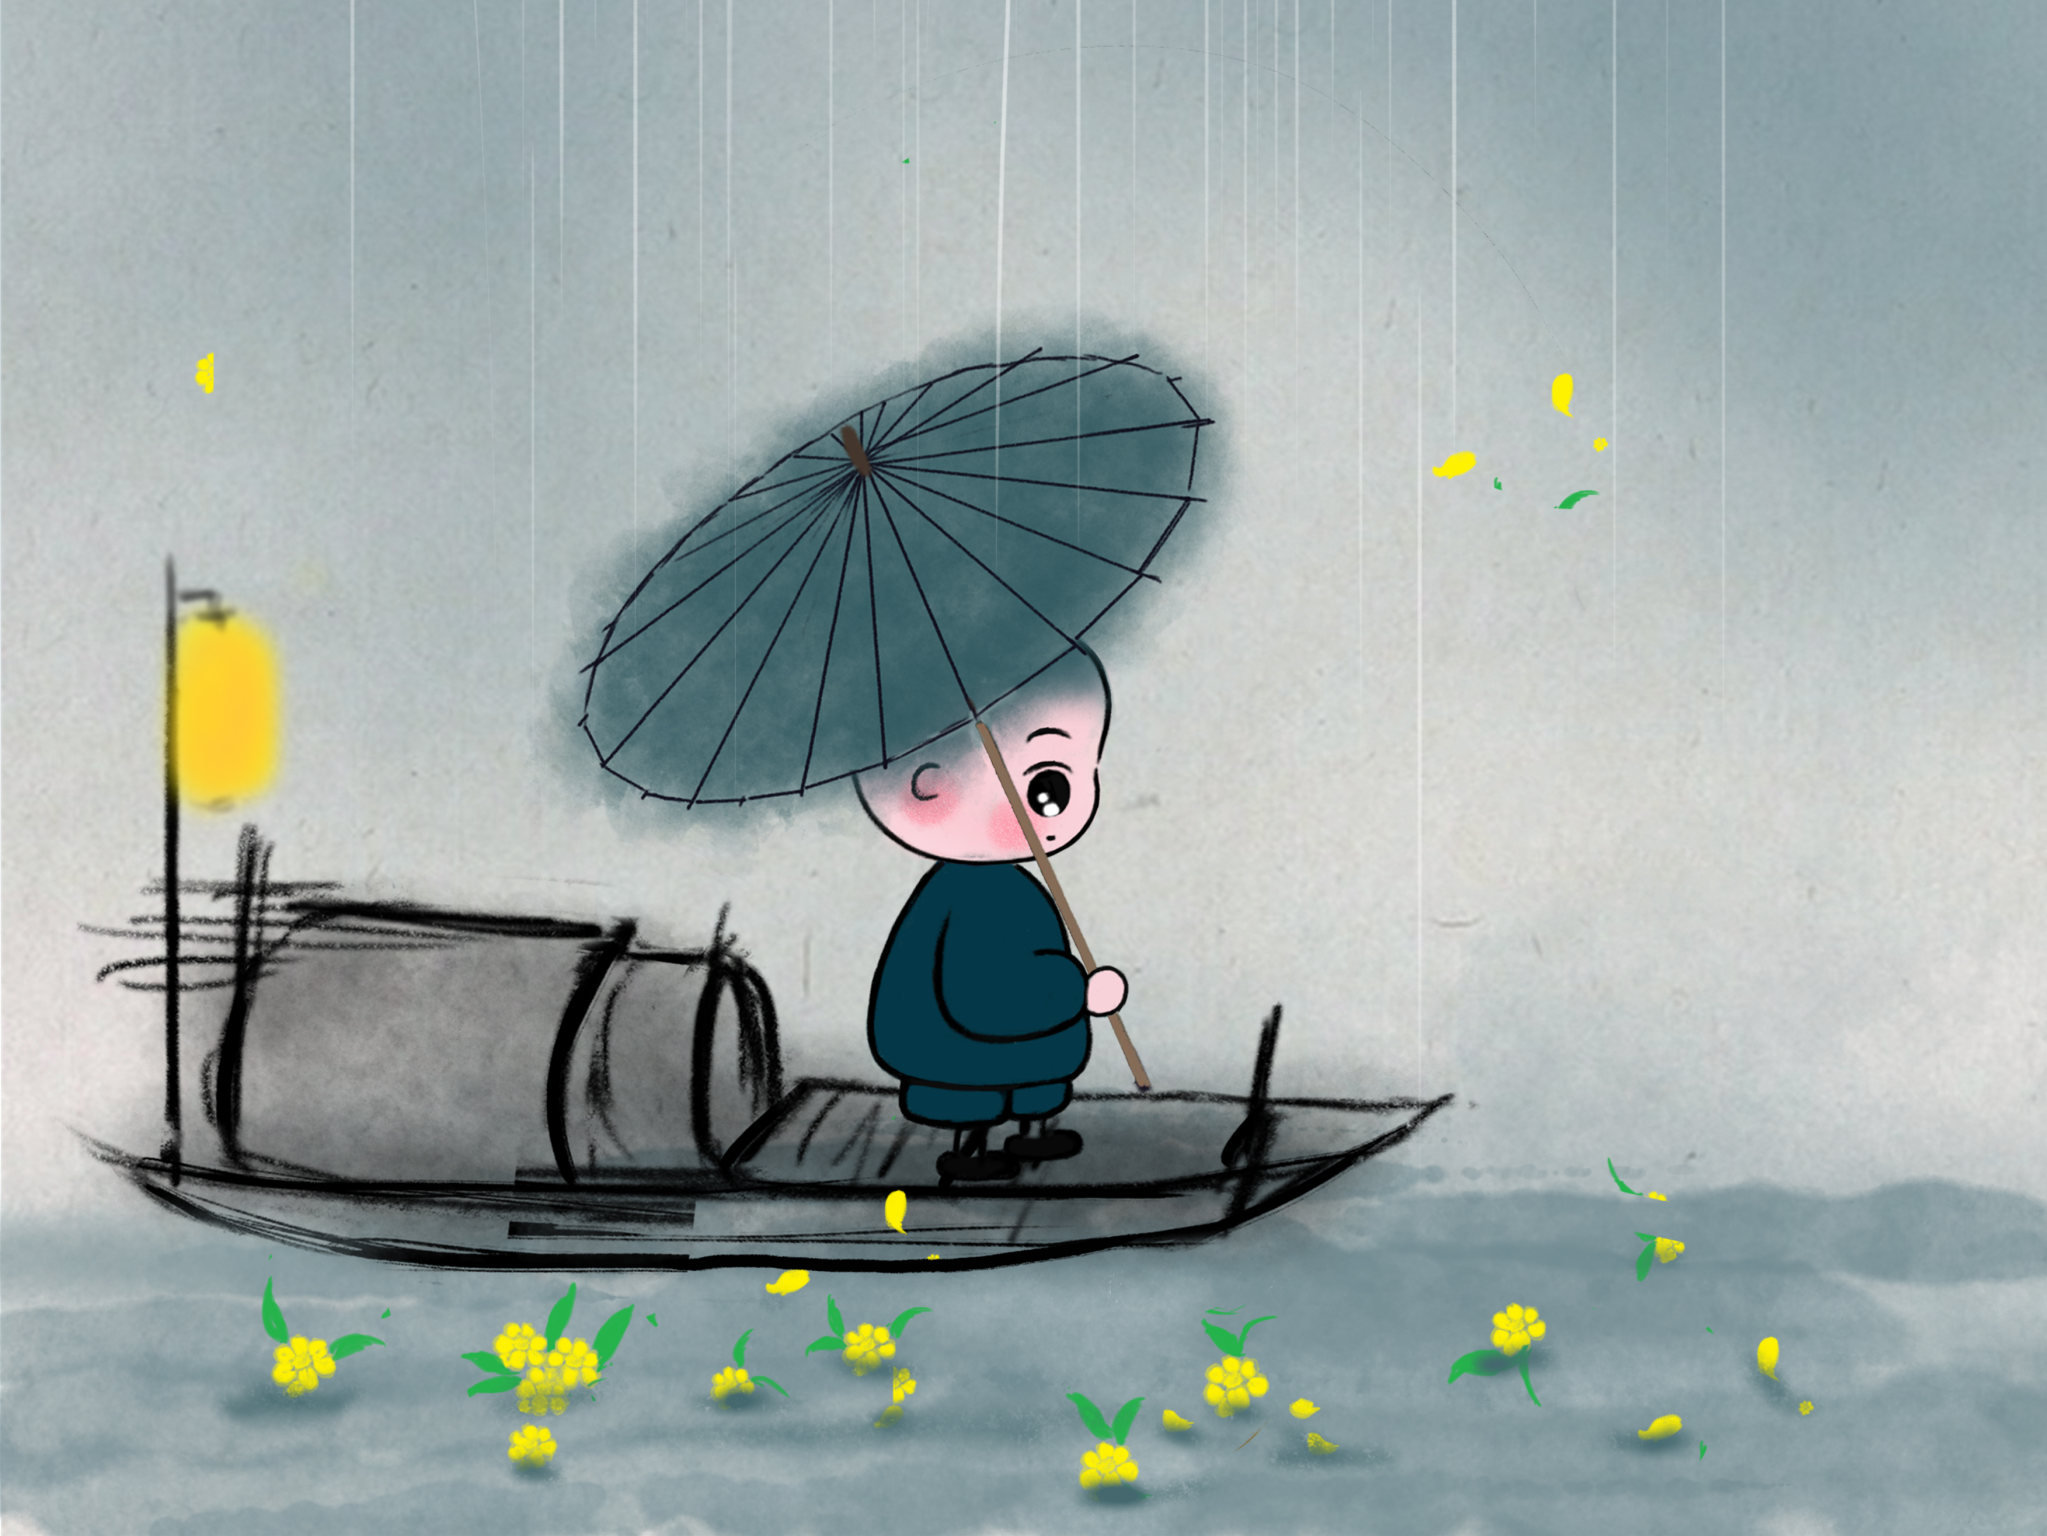 儿童插画 小和尚小道士 中国风 童真童趣 雨夜 江河 船伞